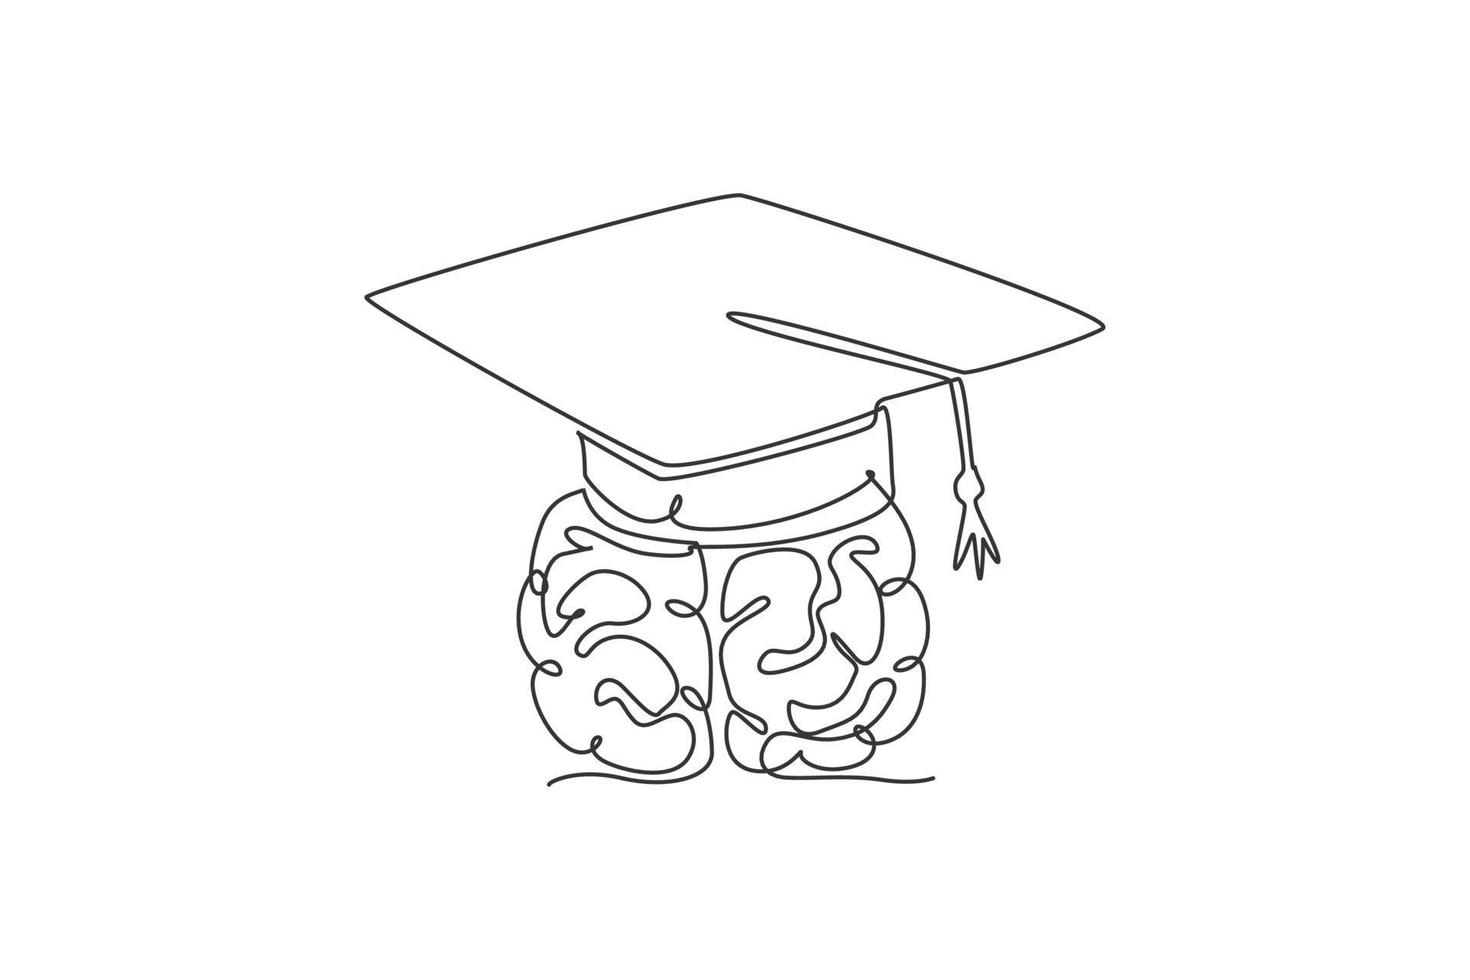 dibujo de una sola línea continua del cerebro humano con la etiqueta del logotipo de la gorra de graduación. concepto de icono de logotipo de curso de estudio académico. Ilustración de vector de diseño gráfico de dibujo de una línea moderna